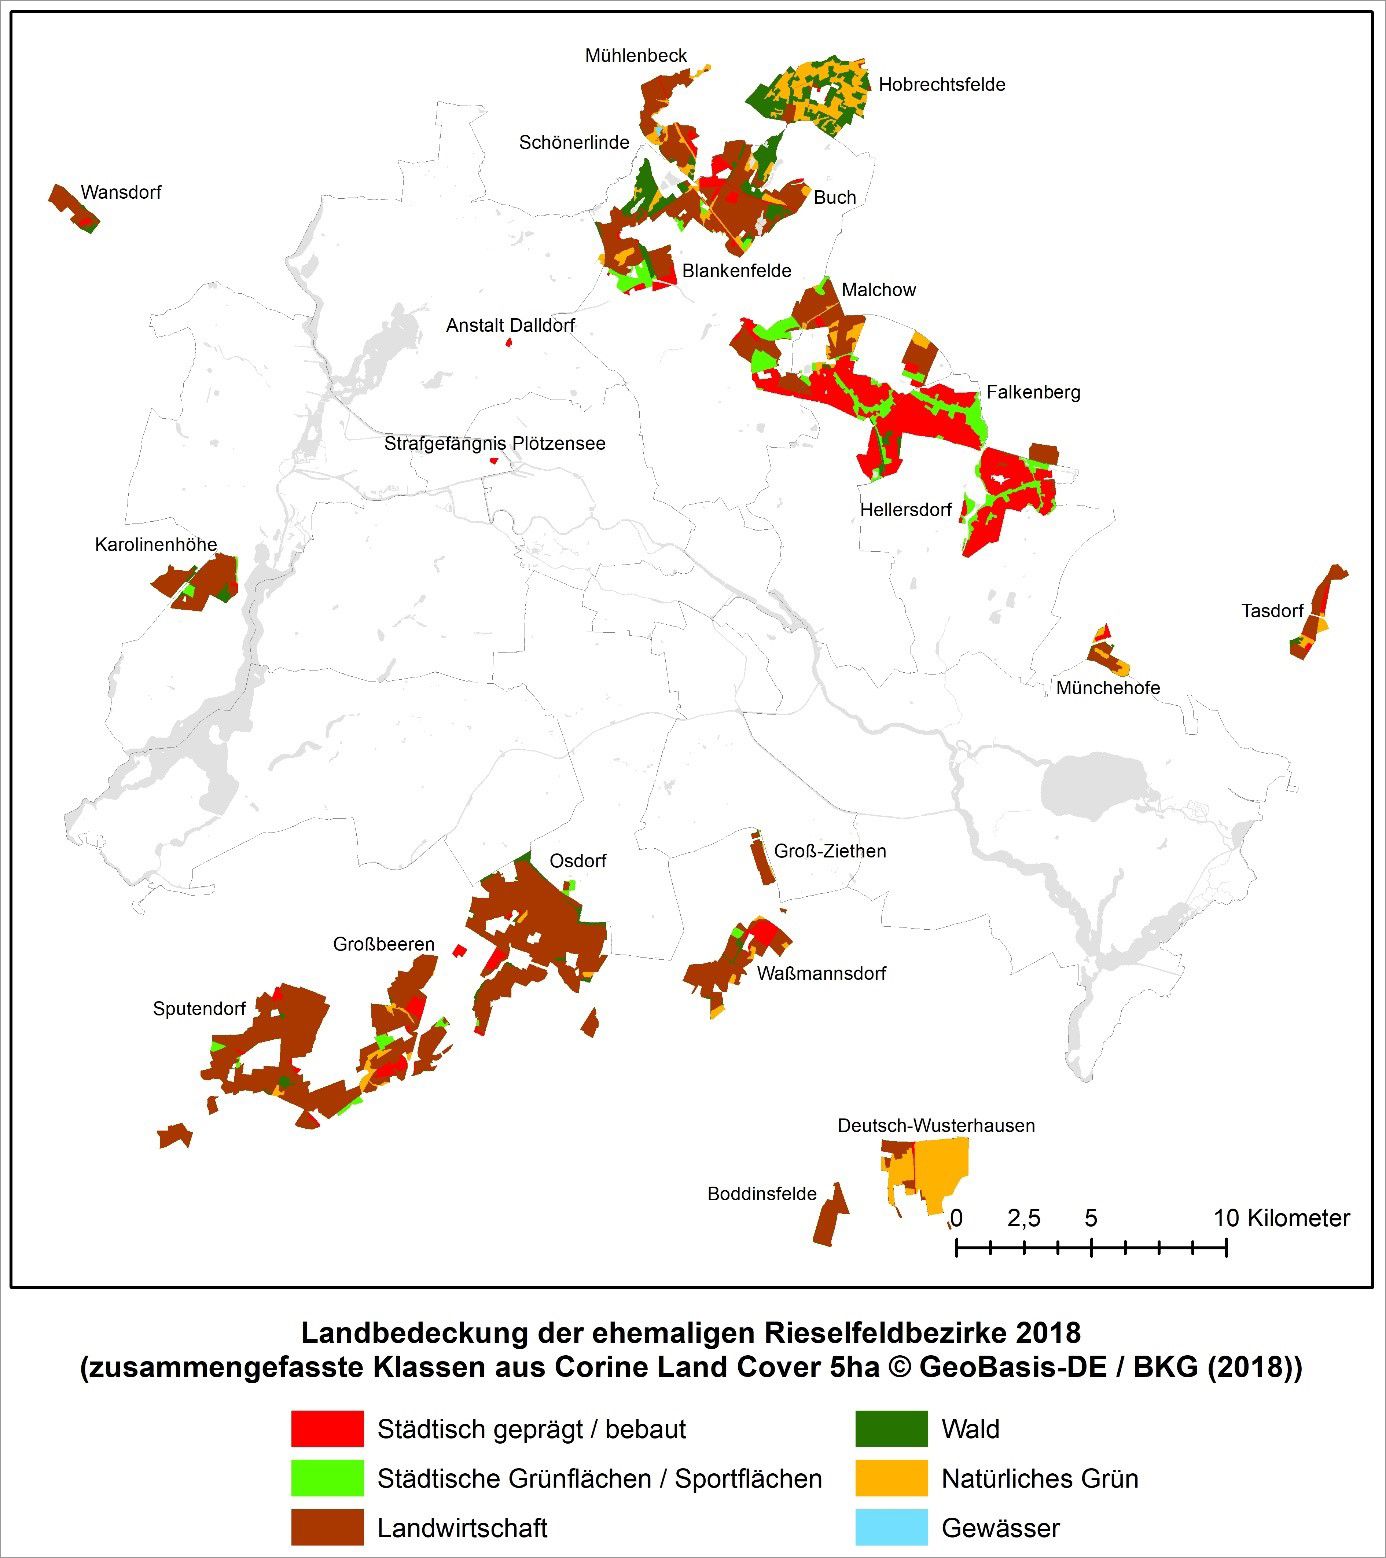 Abb. 3: Landbedeckung der ehemaligen Rieselfeldbezirke 2018